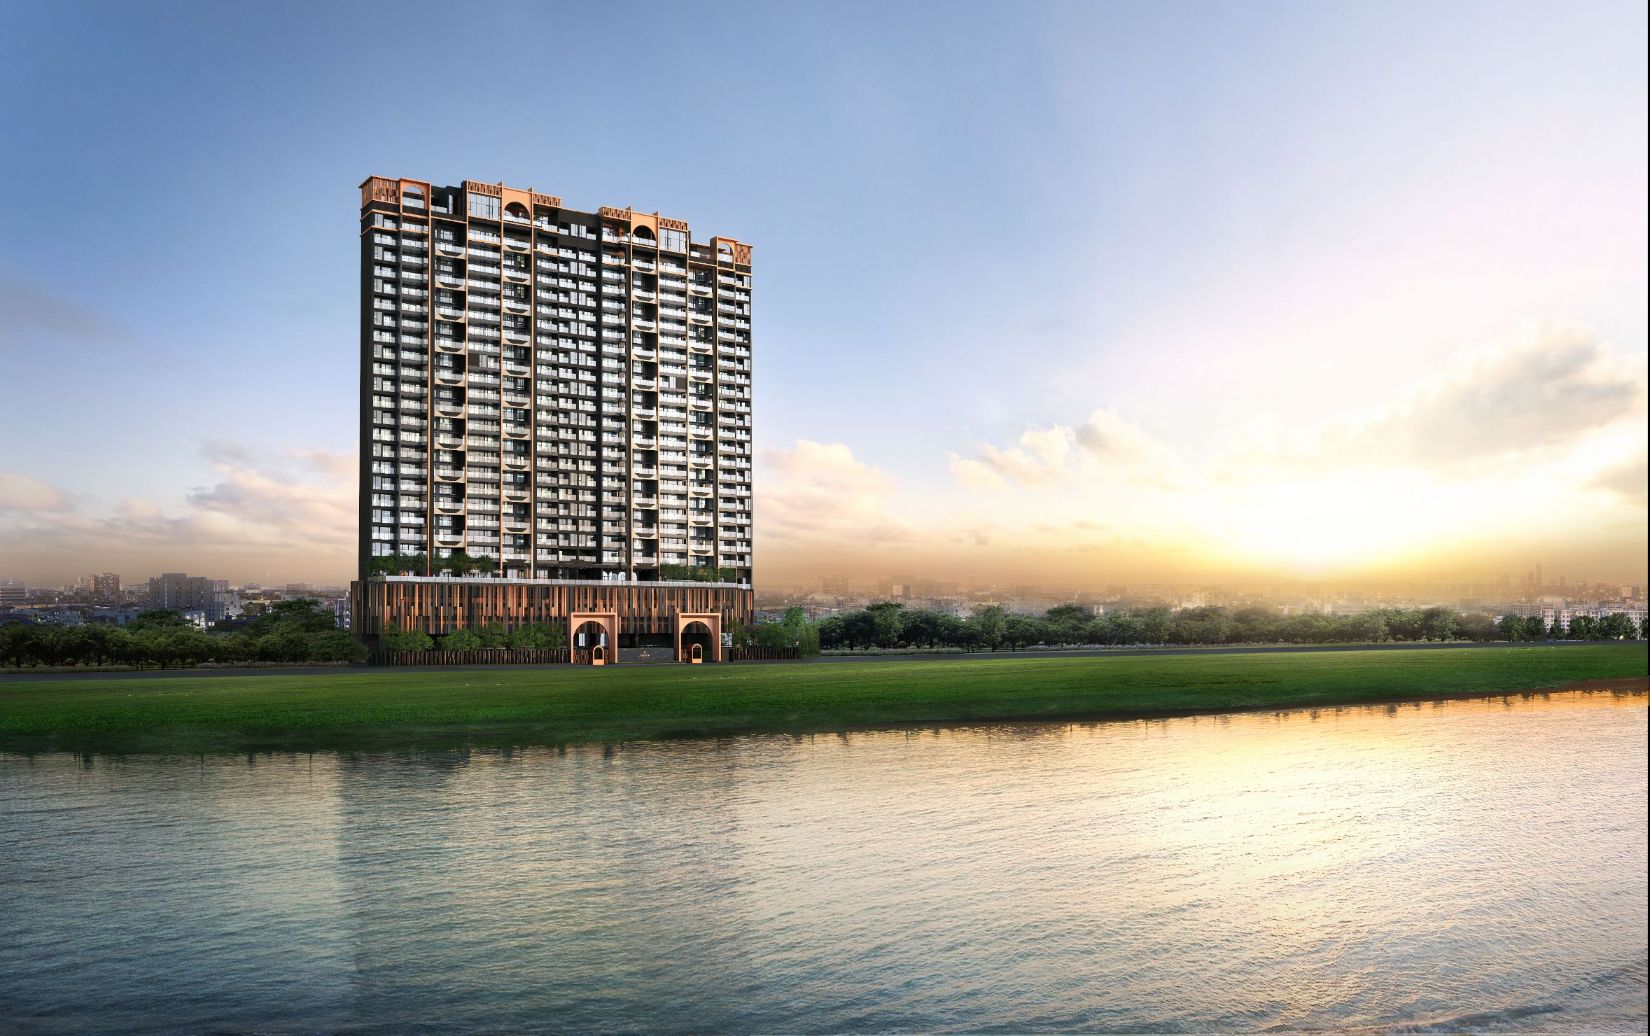 c overall Hires converted CapitaLand Development ra mắt hai dự án căn hộ hạng sang tại Hà Nội và TP.HCM